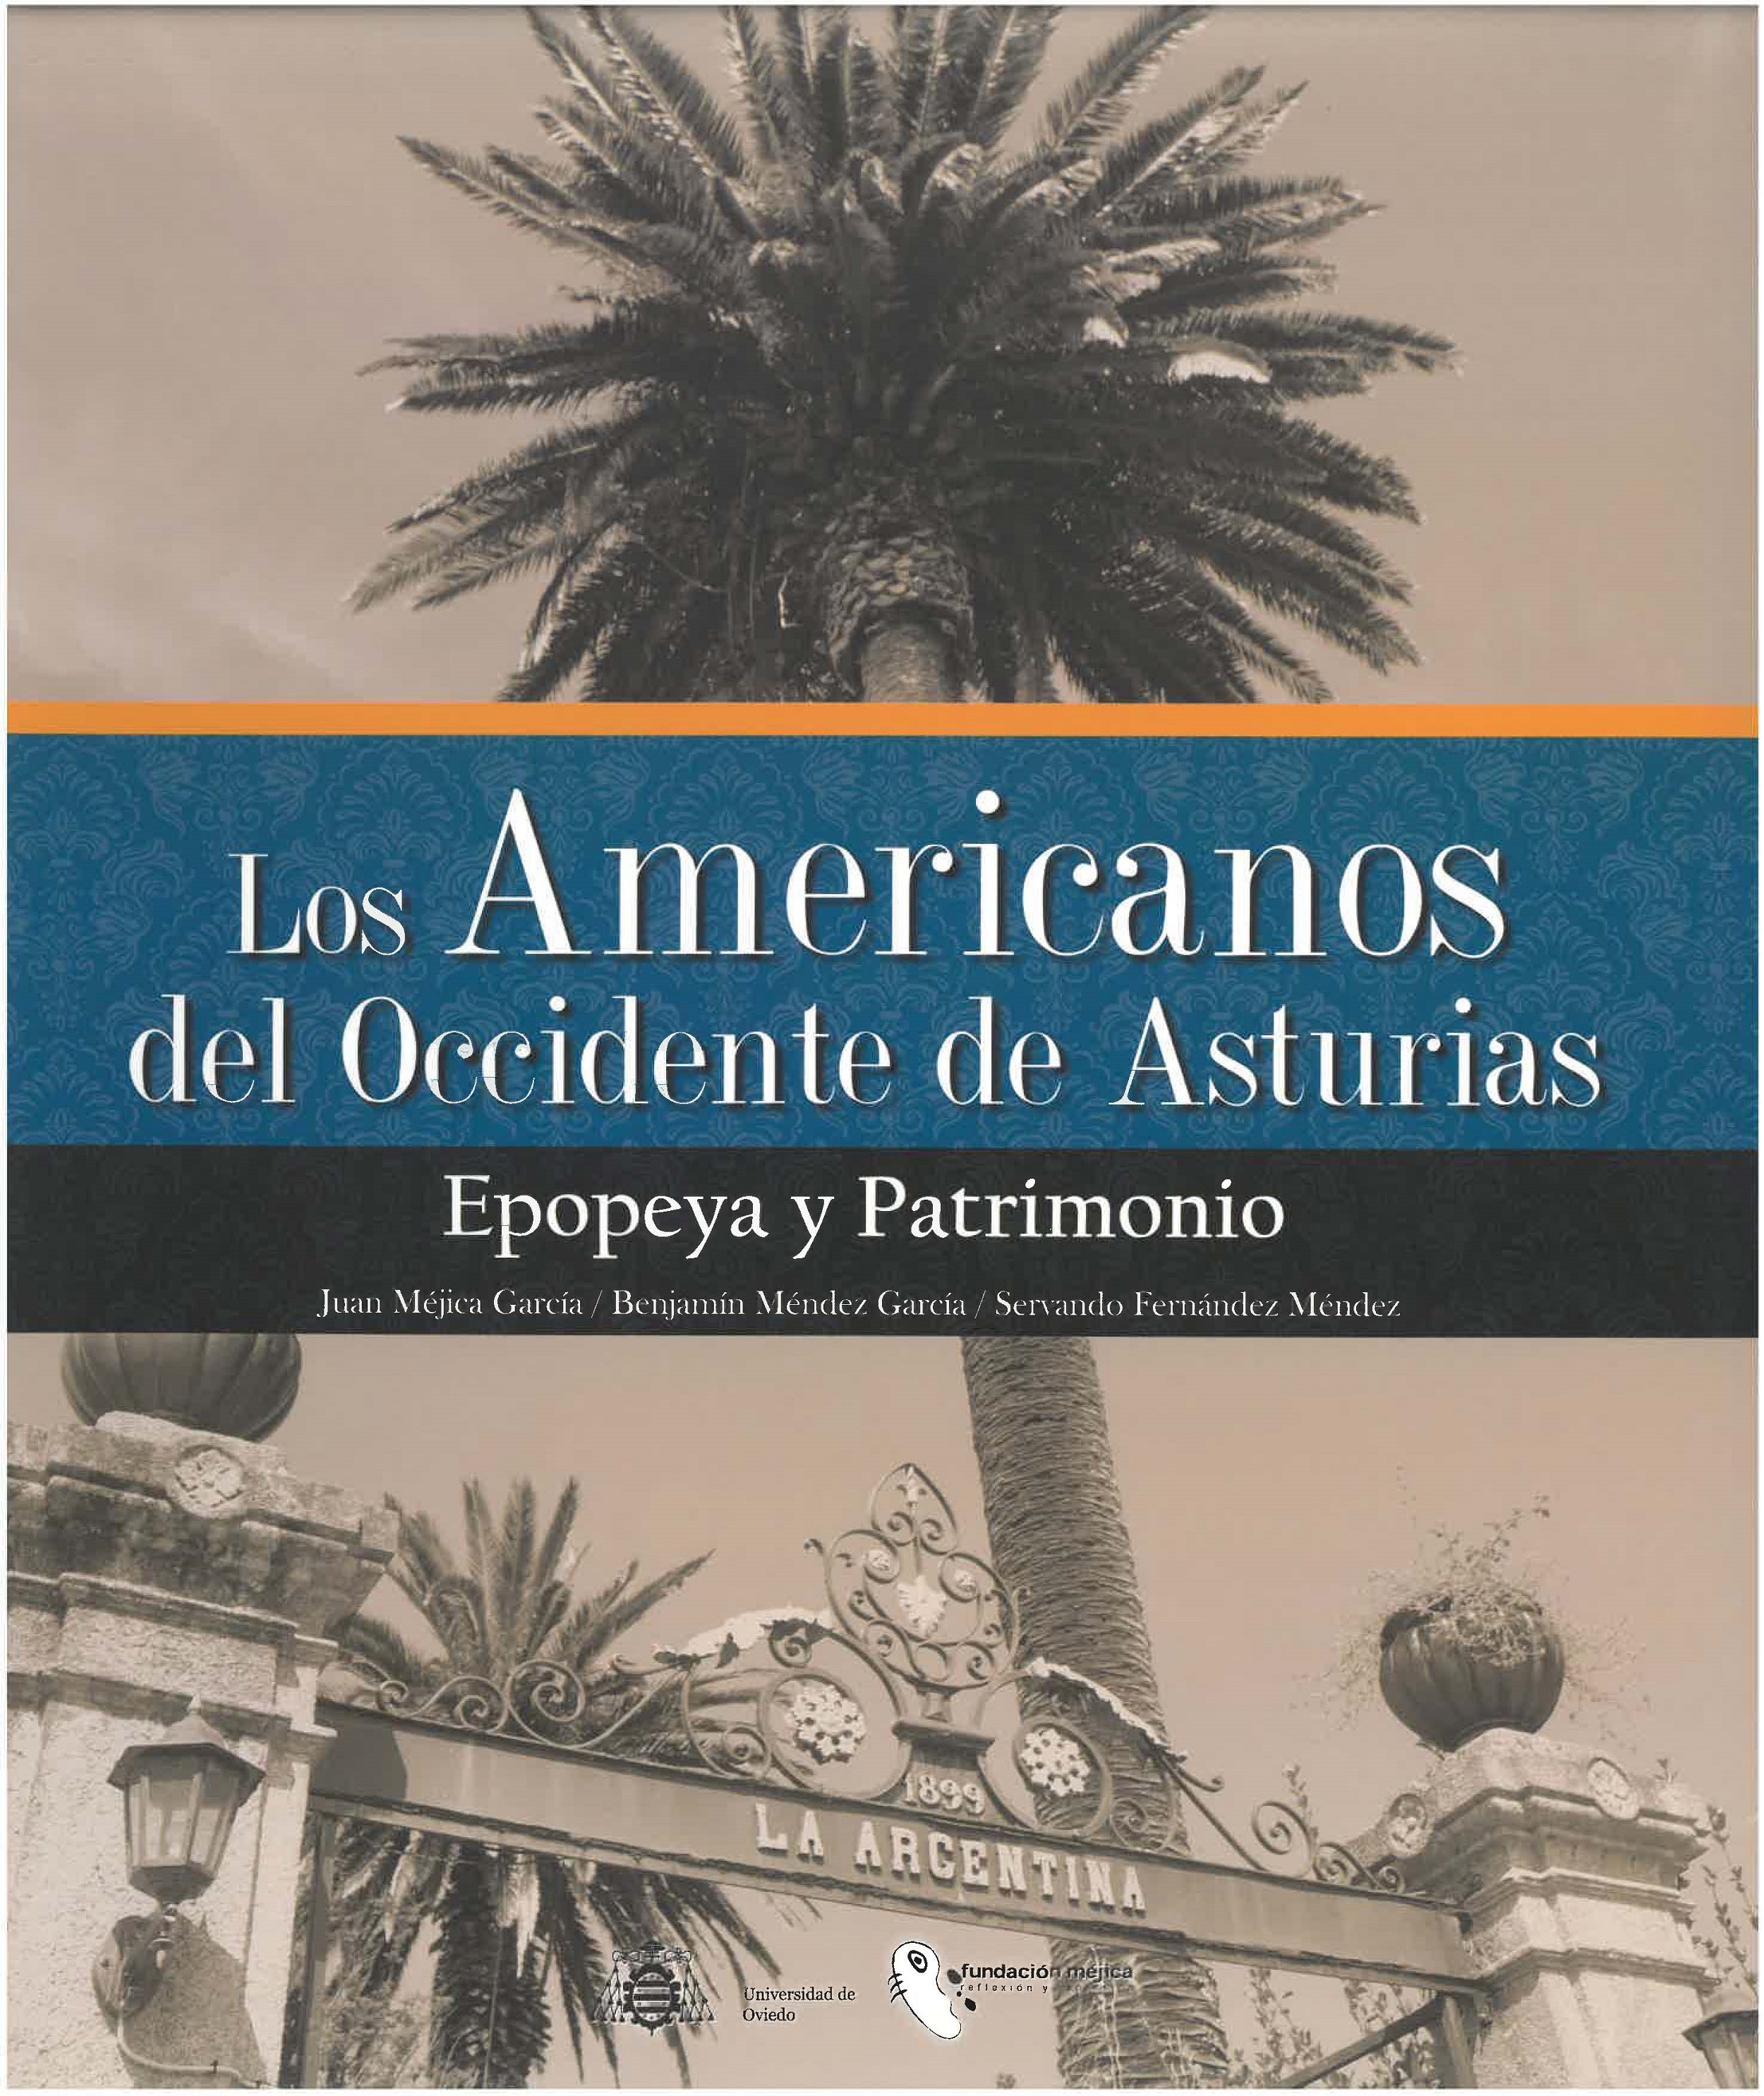 Imagen de portada del libro Los Americanos del Occidente de Asturias